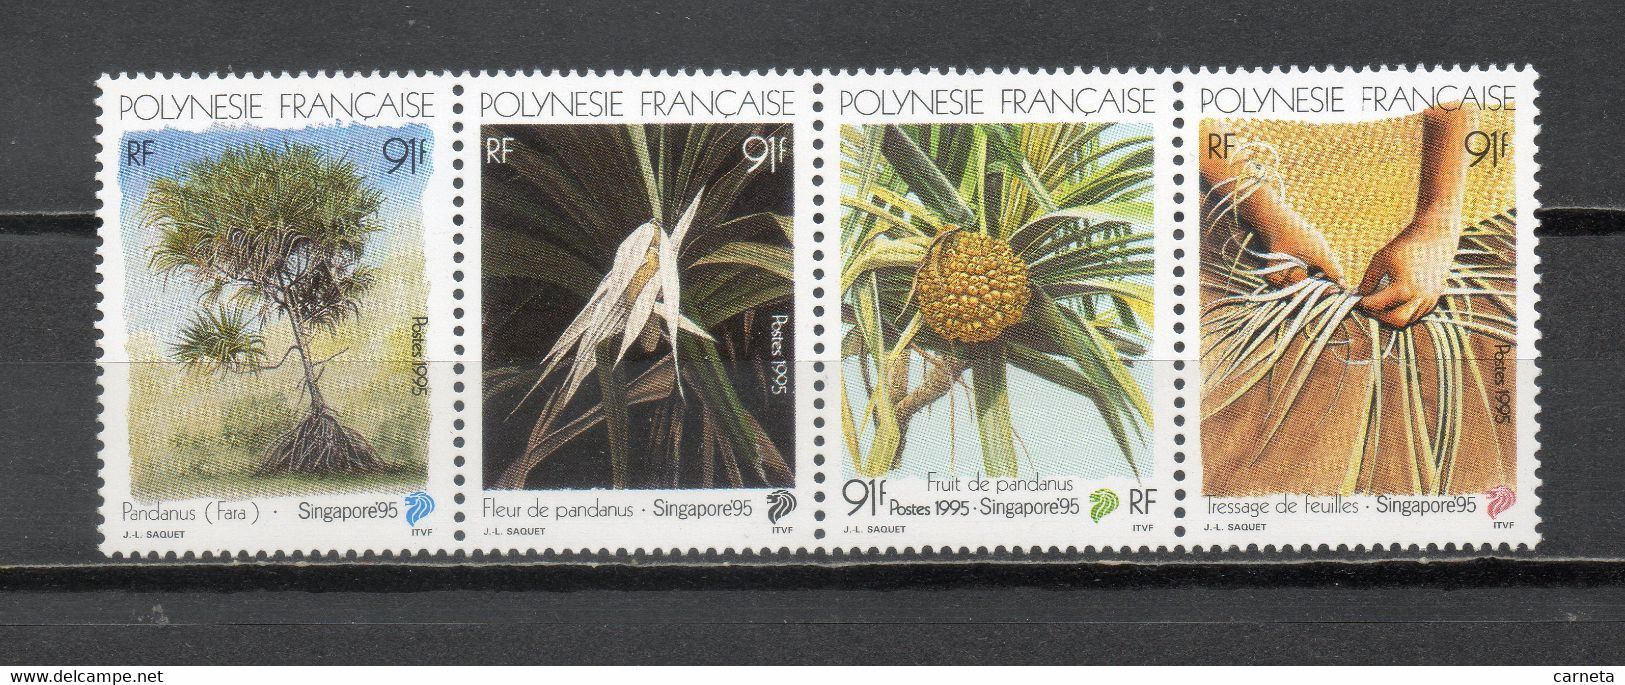 POLYNESIE  N°  489 à 492    NEUFS SANS CHARNIERE COTE  10.40€   EXPOSITION PHILATELIQUE FLORE FLEUR - Unused Stamps